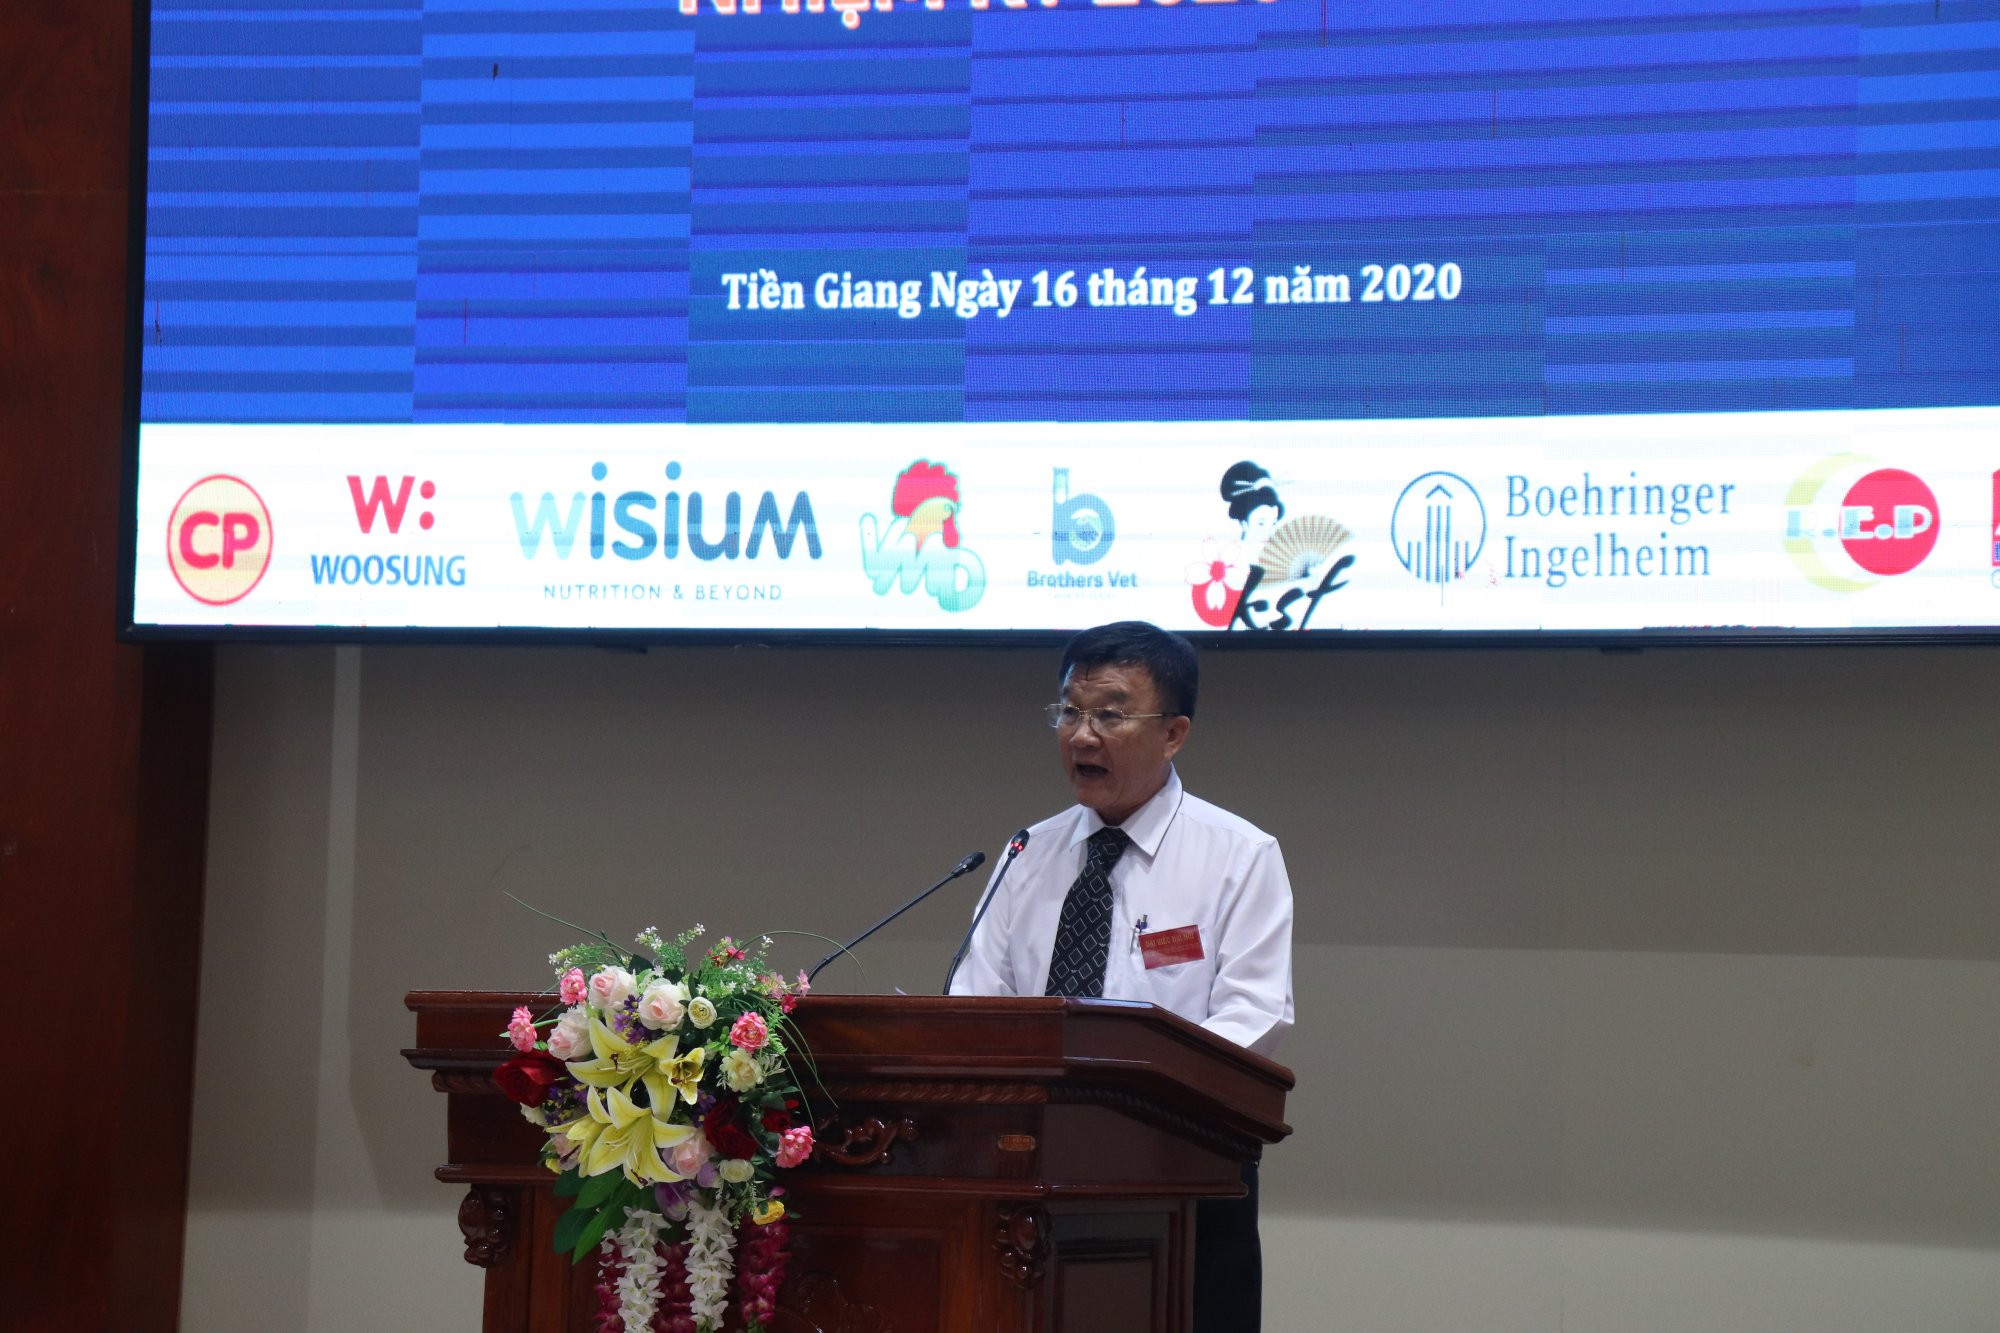 Ông Nguyễn Minh Thuần - Chủ tịch Hội Chăn Nuôi Tiền Giang phát biểu tại Hội Nghị